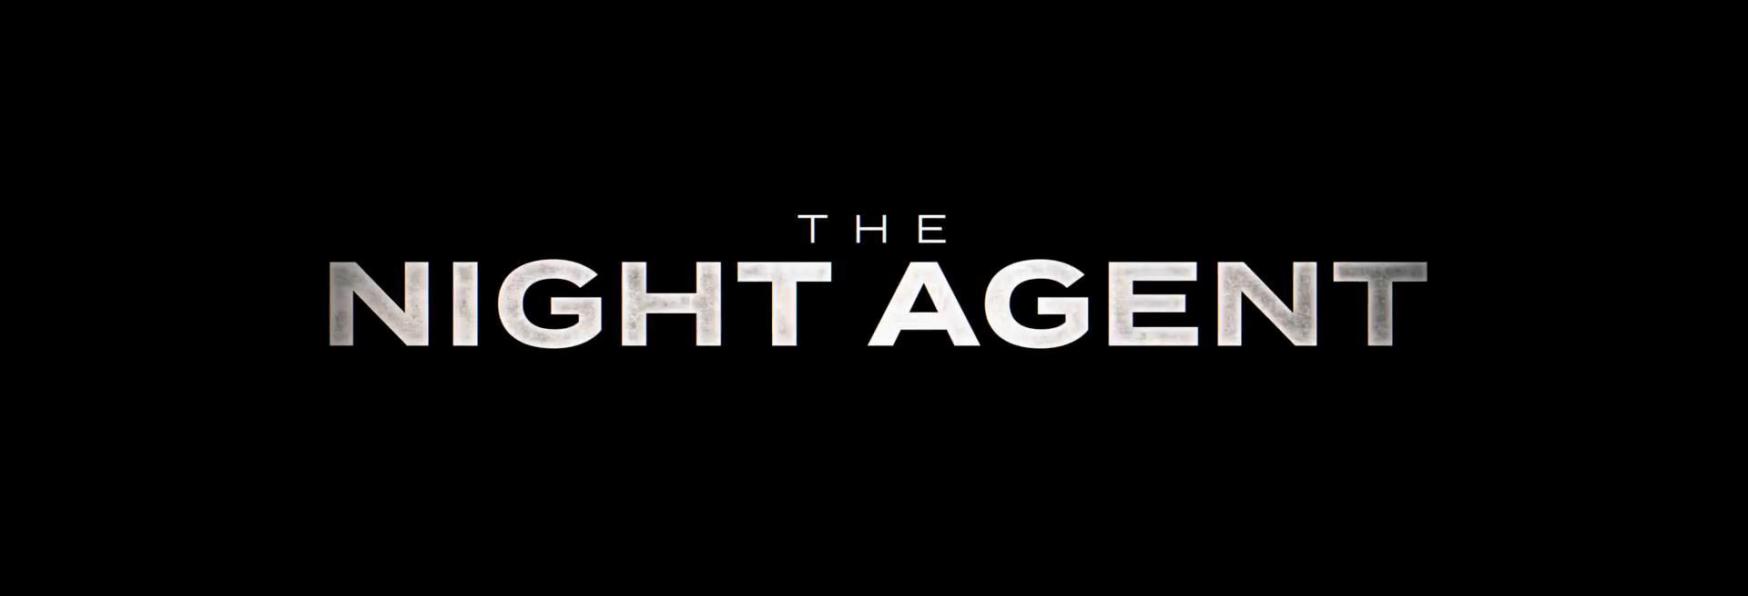 The Night Agent: il Trailer e la Data di Uscita della nuova Serie TV di Netflix